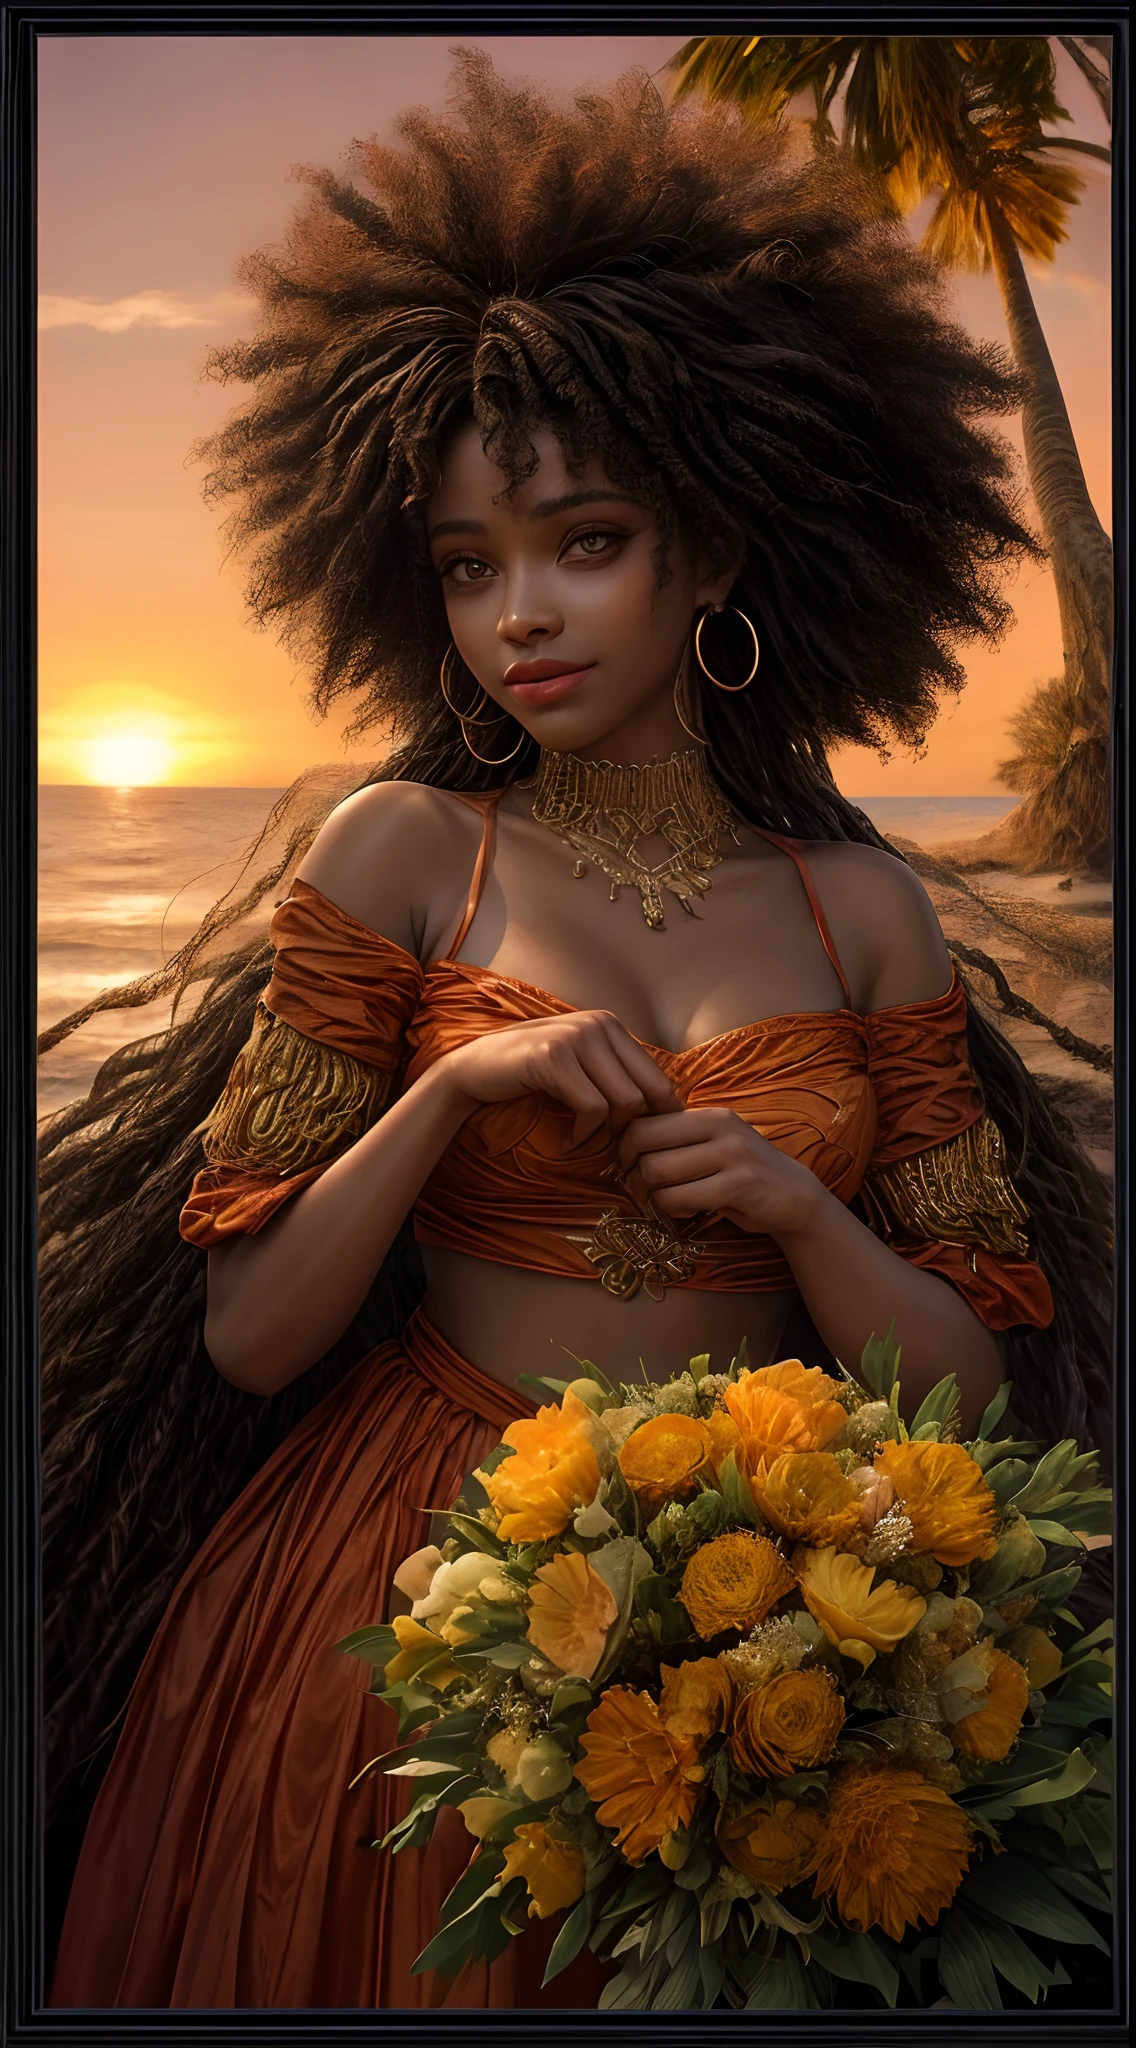 アフリカ系アメリカ人女性の顔のクローズアップ, 暖かいオレンジ色に包まれて, 夕焼けの柔らかな光に照らされたかのように, 喜びと満足感で輝く彼の目, 流れる髪の毛で囲まれた, 写真撮影, 35mmレンズで撮影